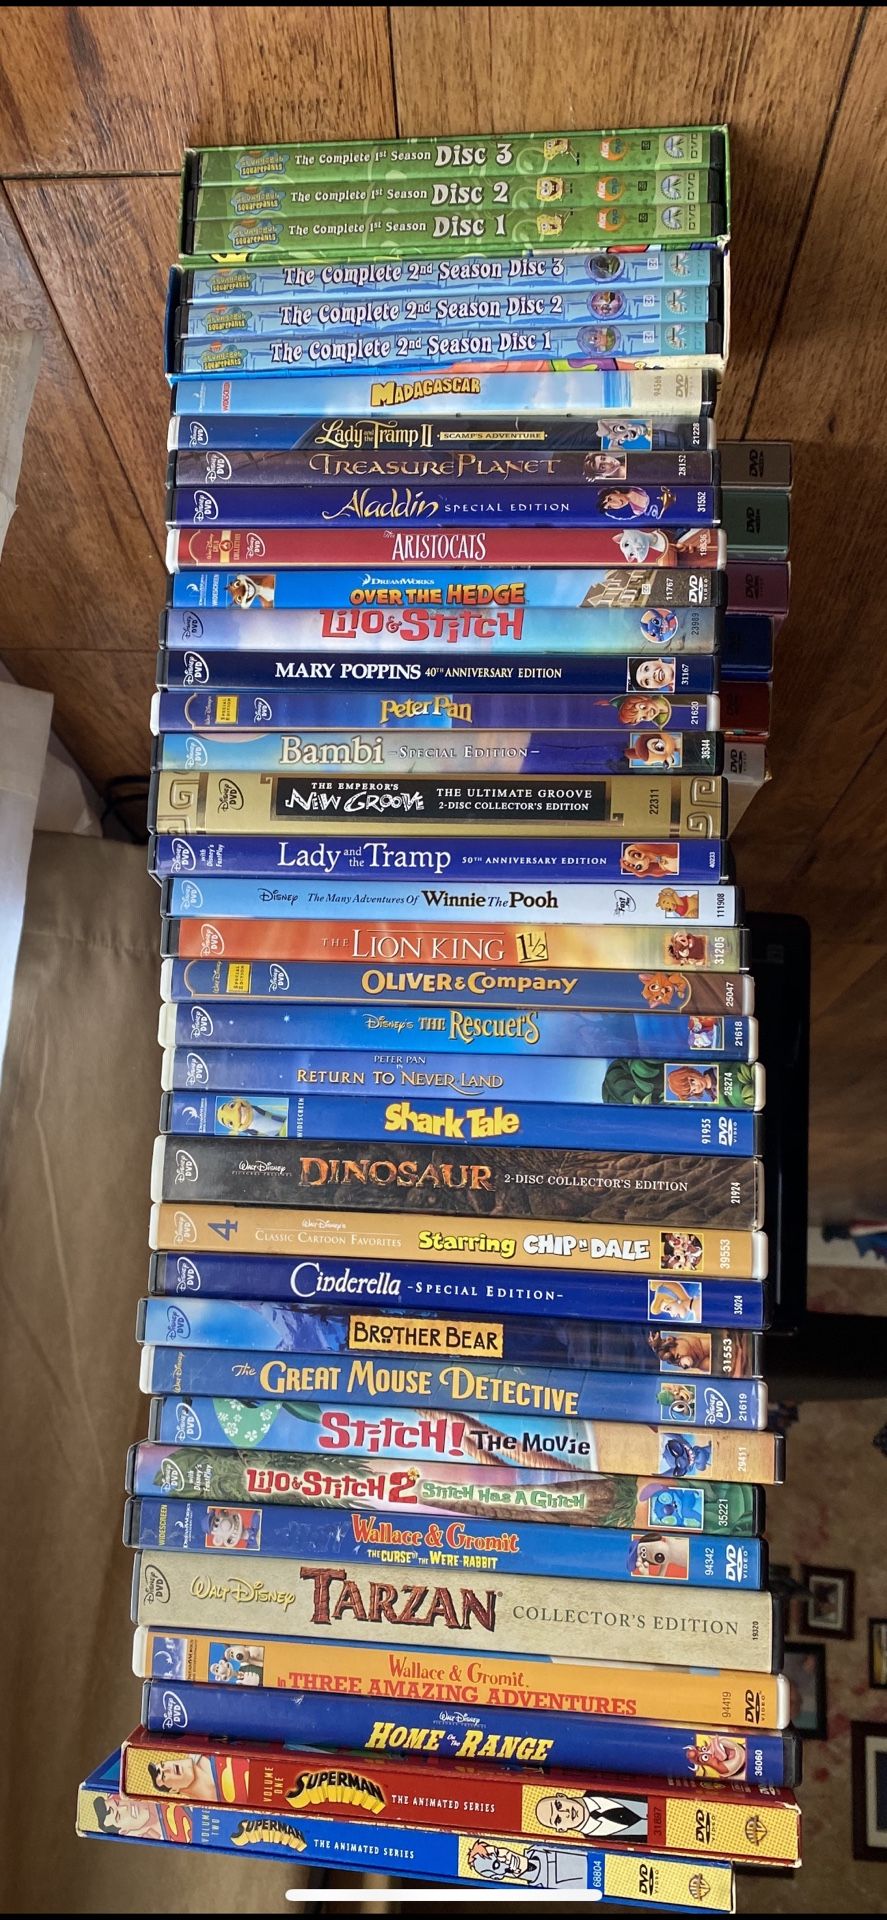 Disney / Family / Childrens DVDs